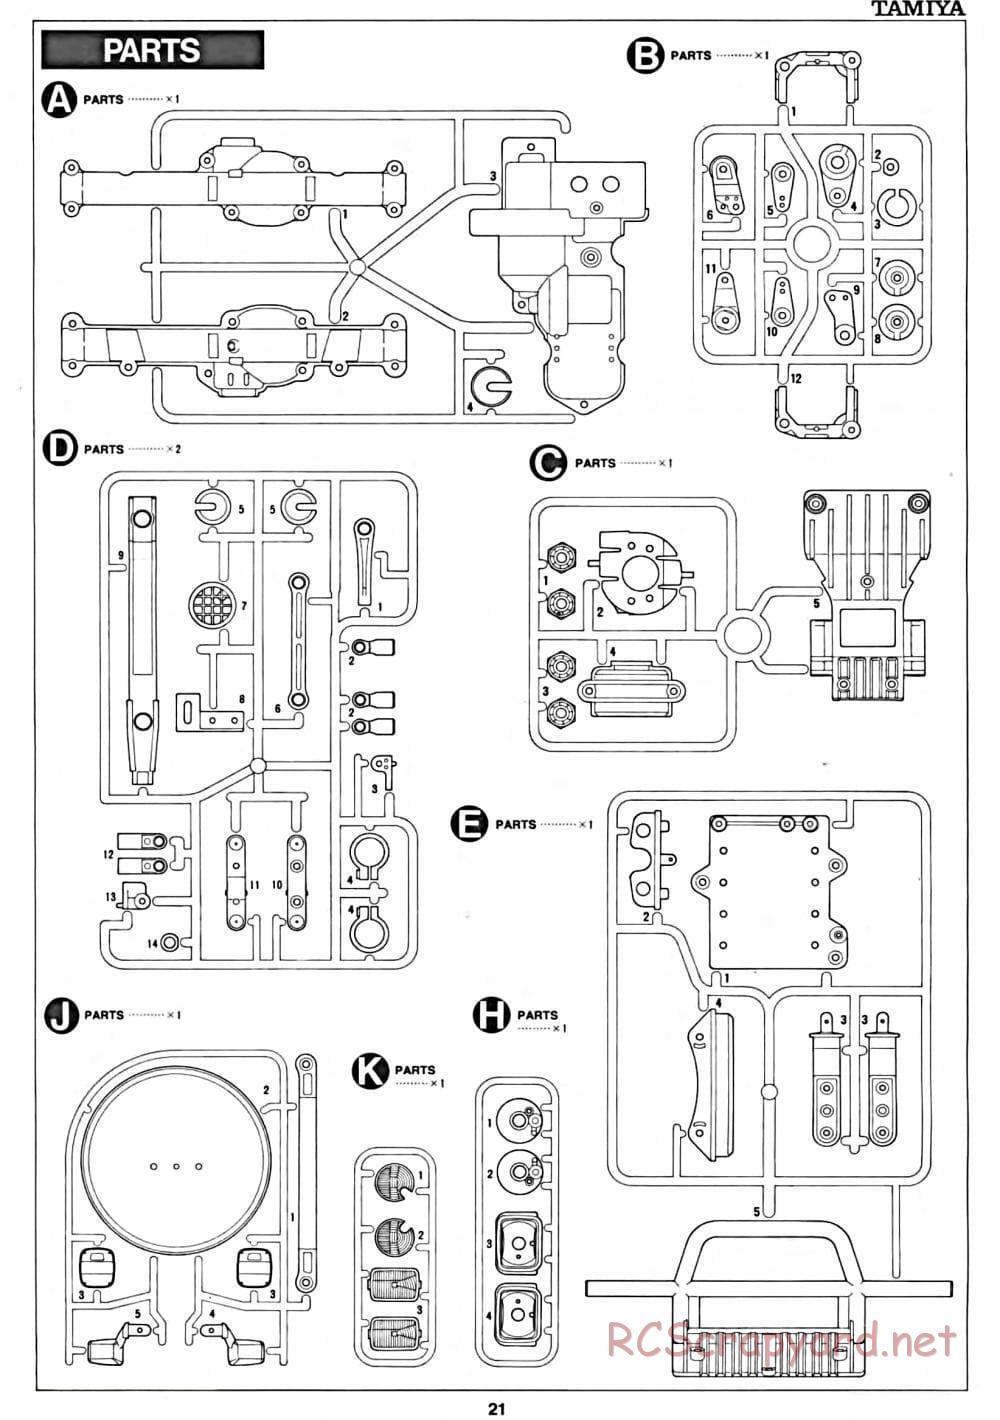 Tamiya - CC-01 Chassis - Manual - Page 21